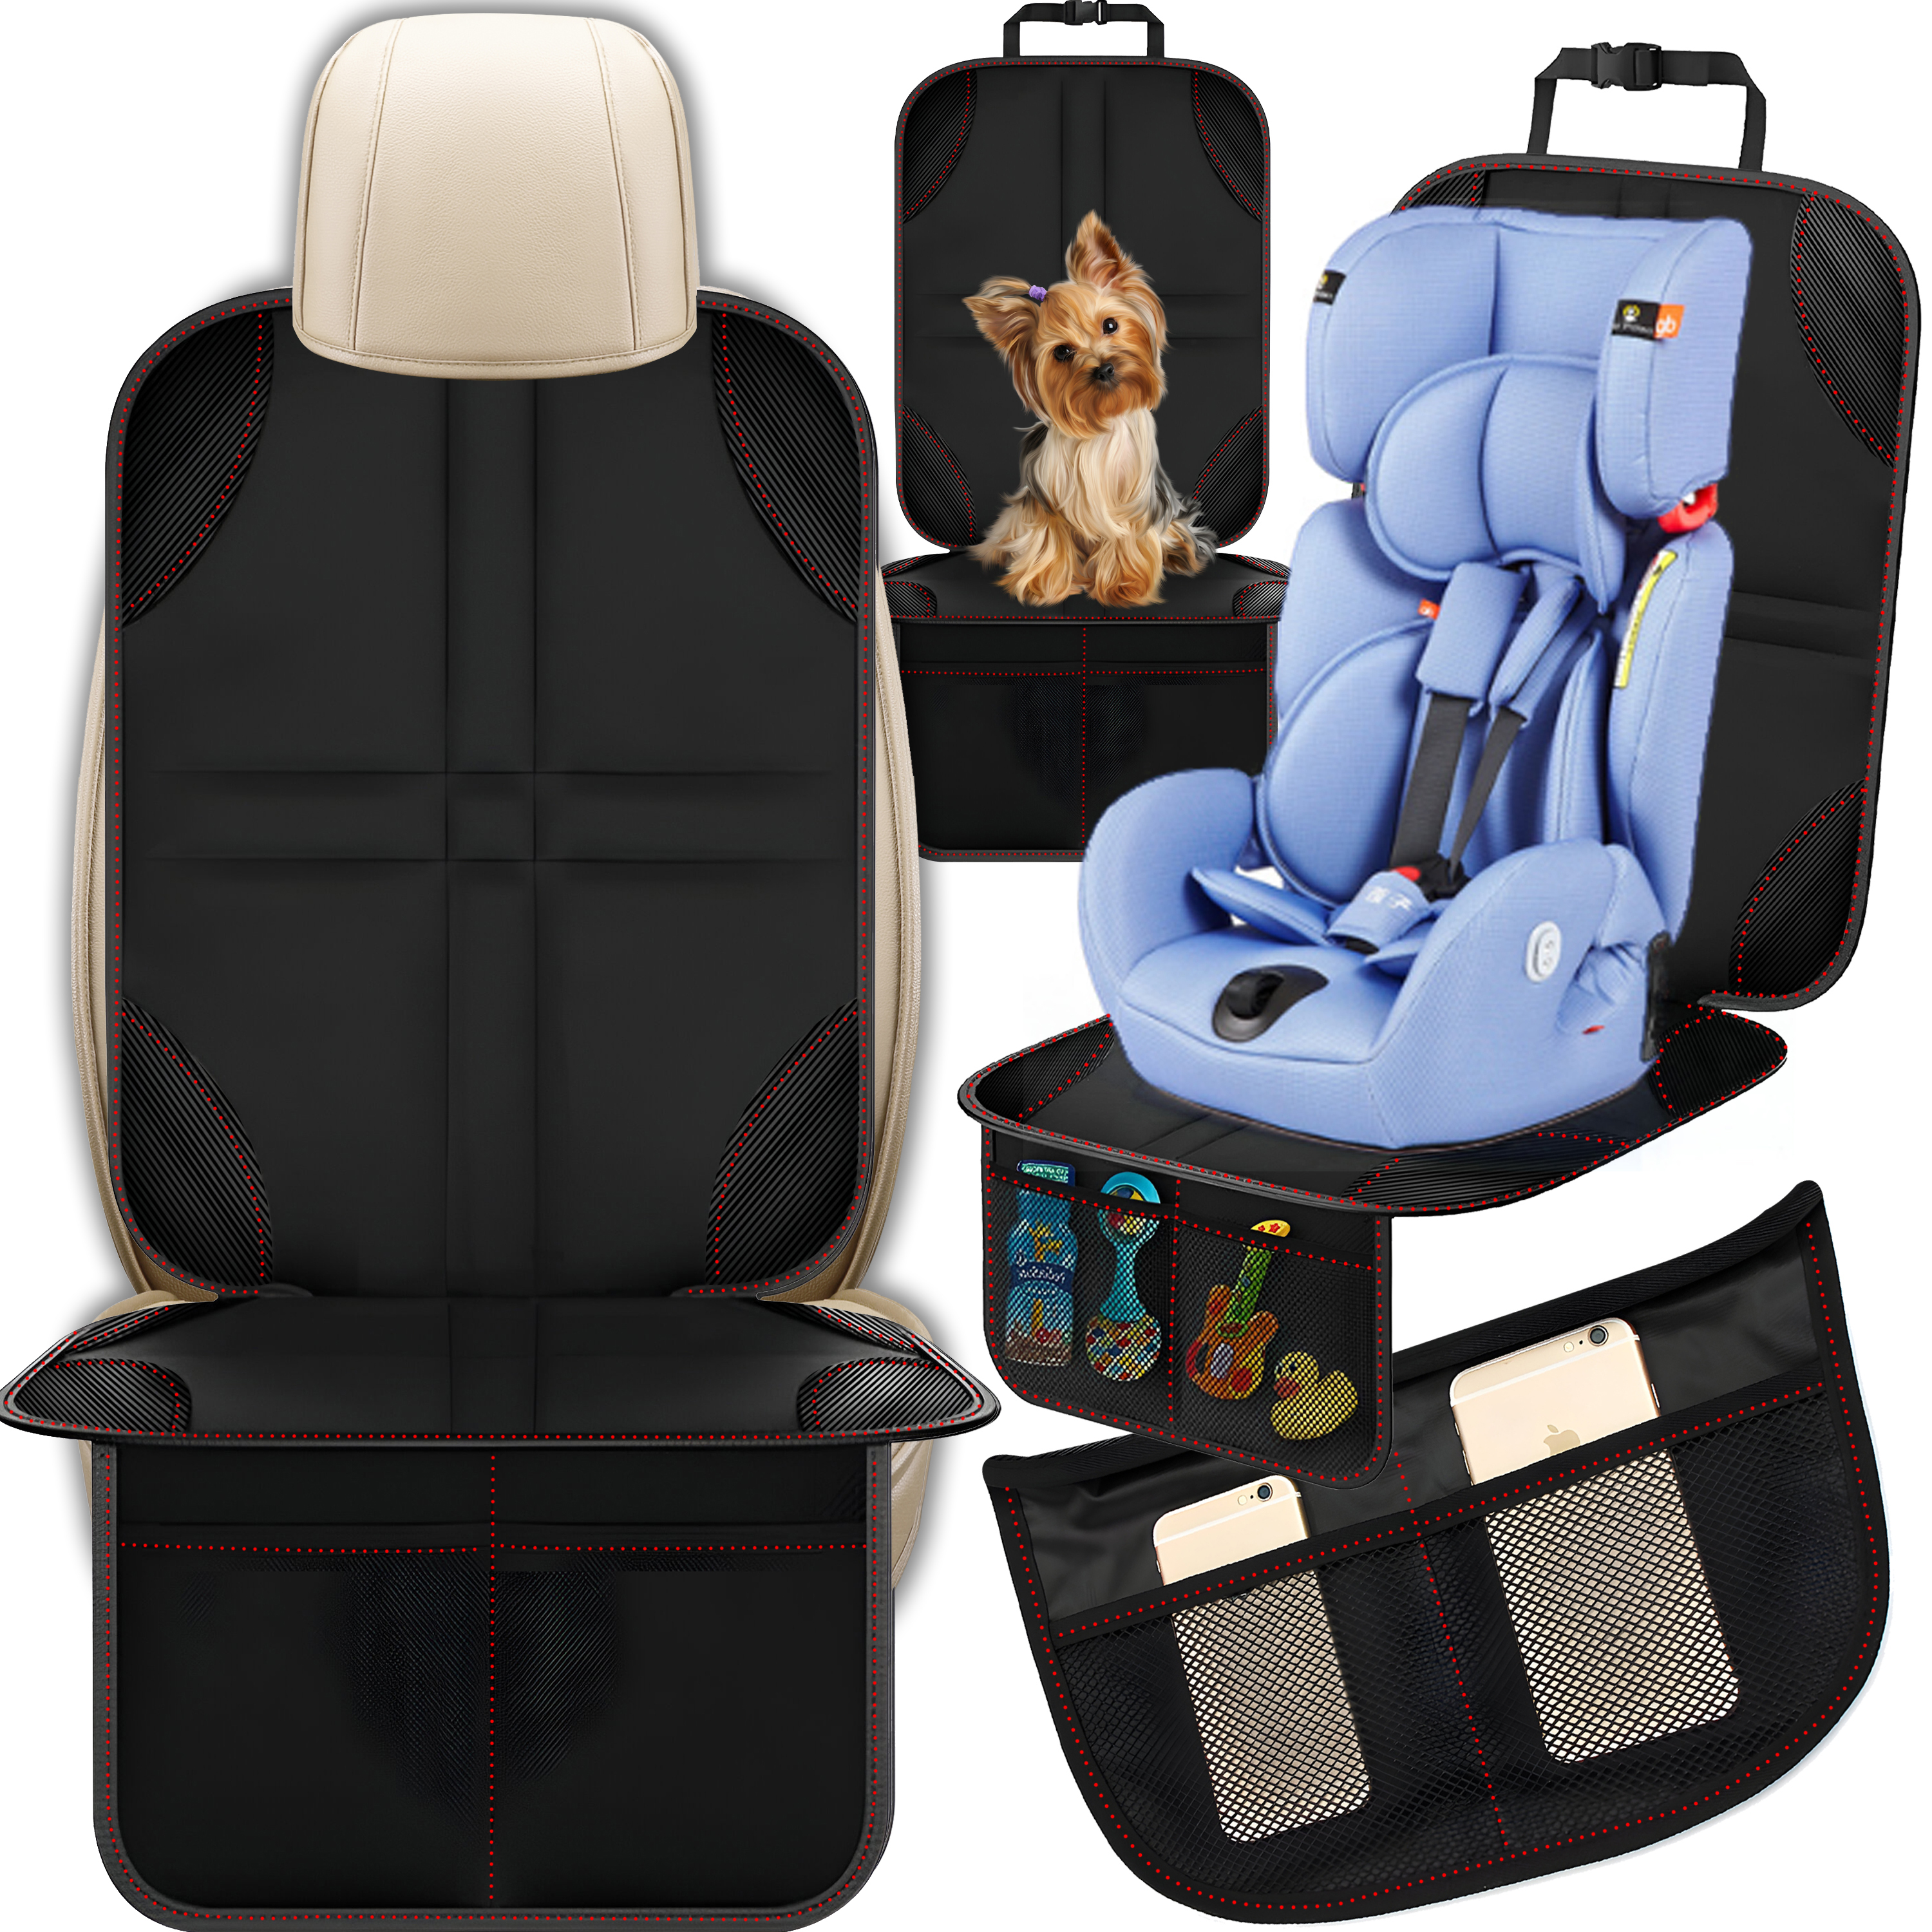 Kindersitz-Unterlage Basic fürs Auto, 3 Netztaschen, Isofix